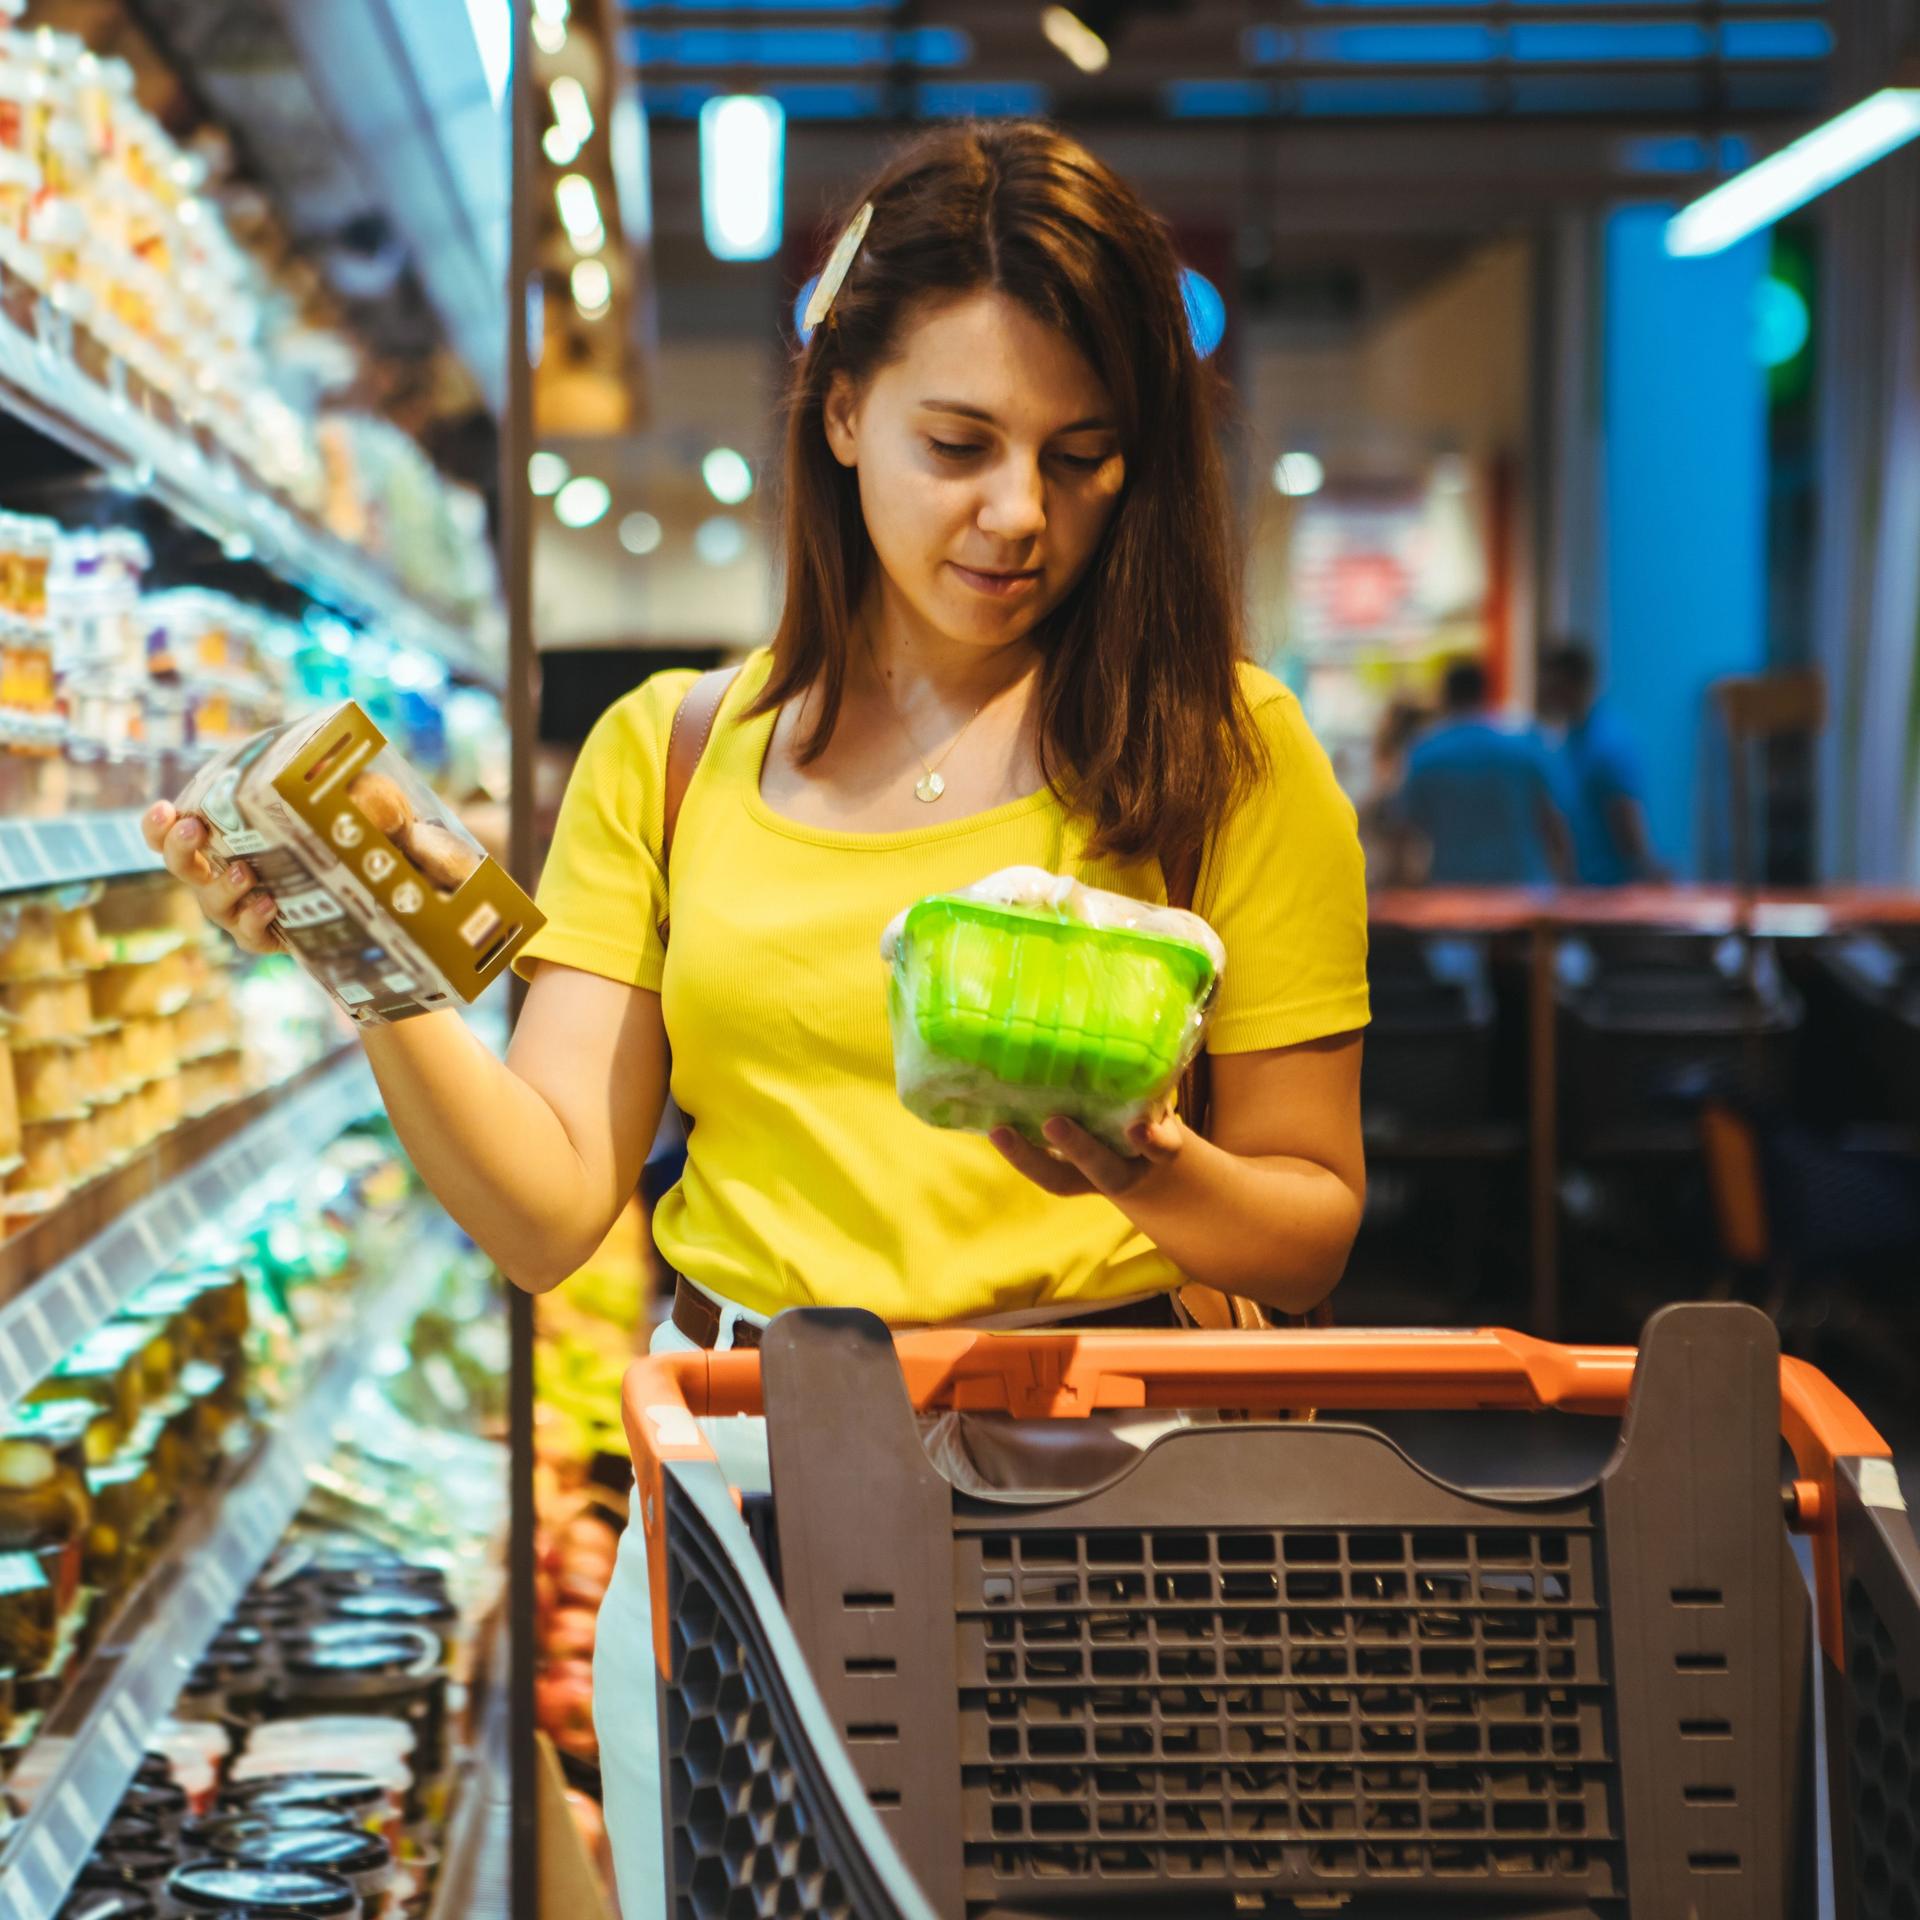 Eine Frau im gelben T-Shirt steht mit einem Einkaufswagen vorm Kühlregal. Sie schaut sich die Produkte genauer an.